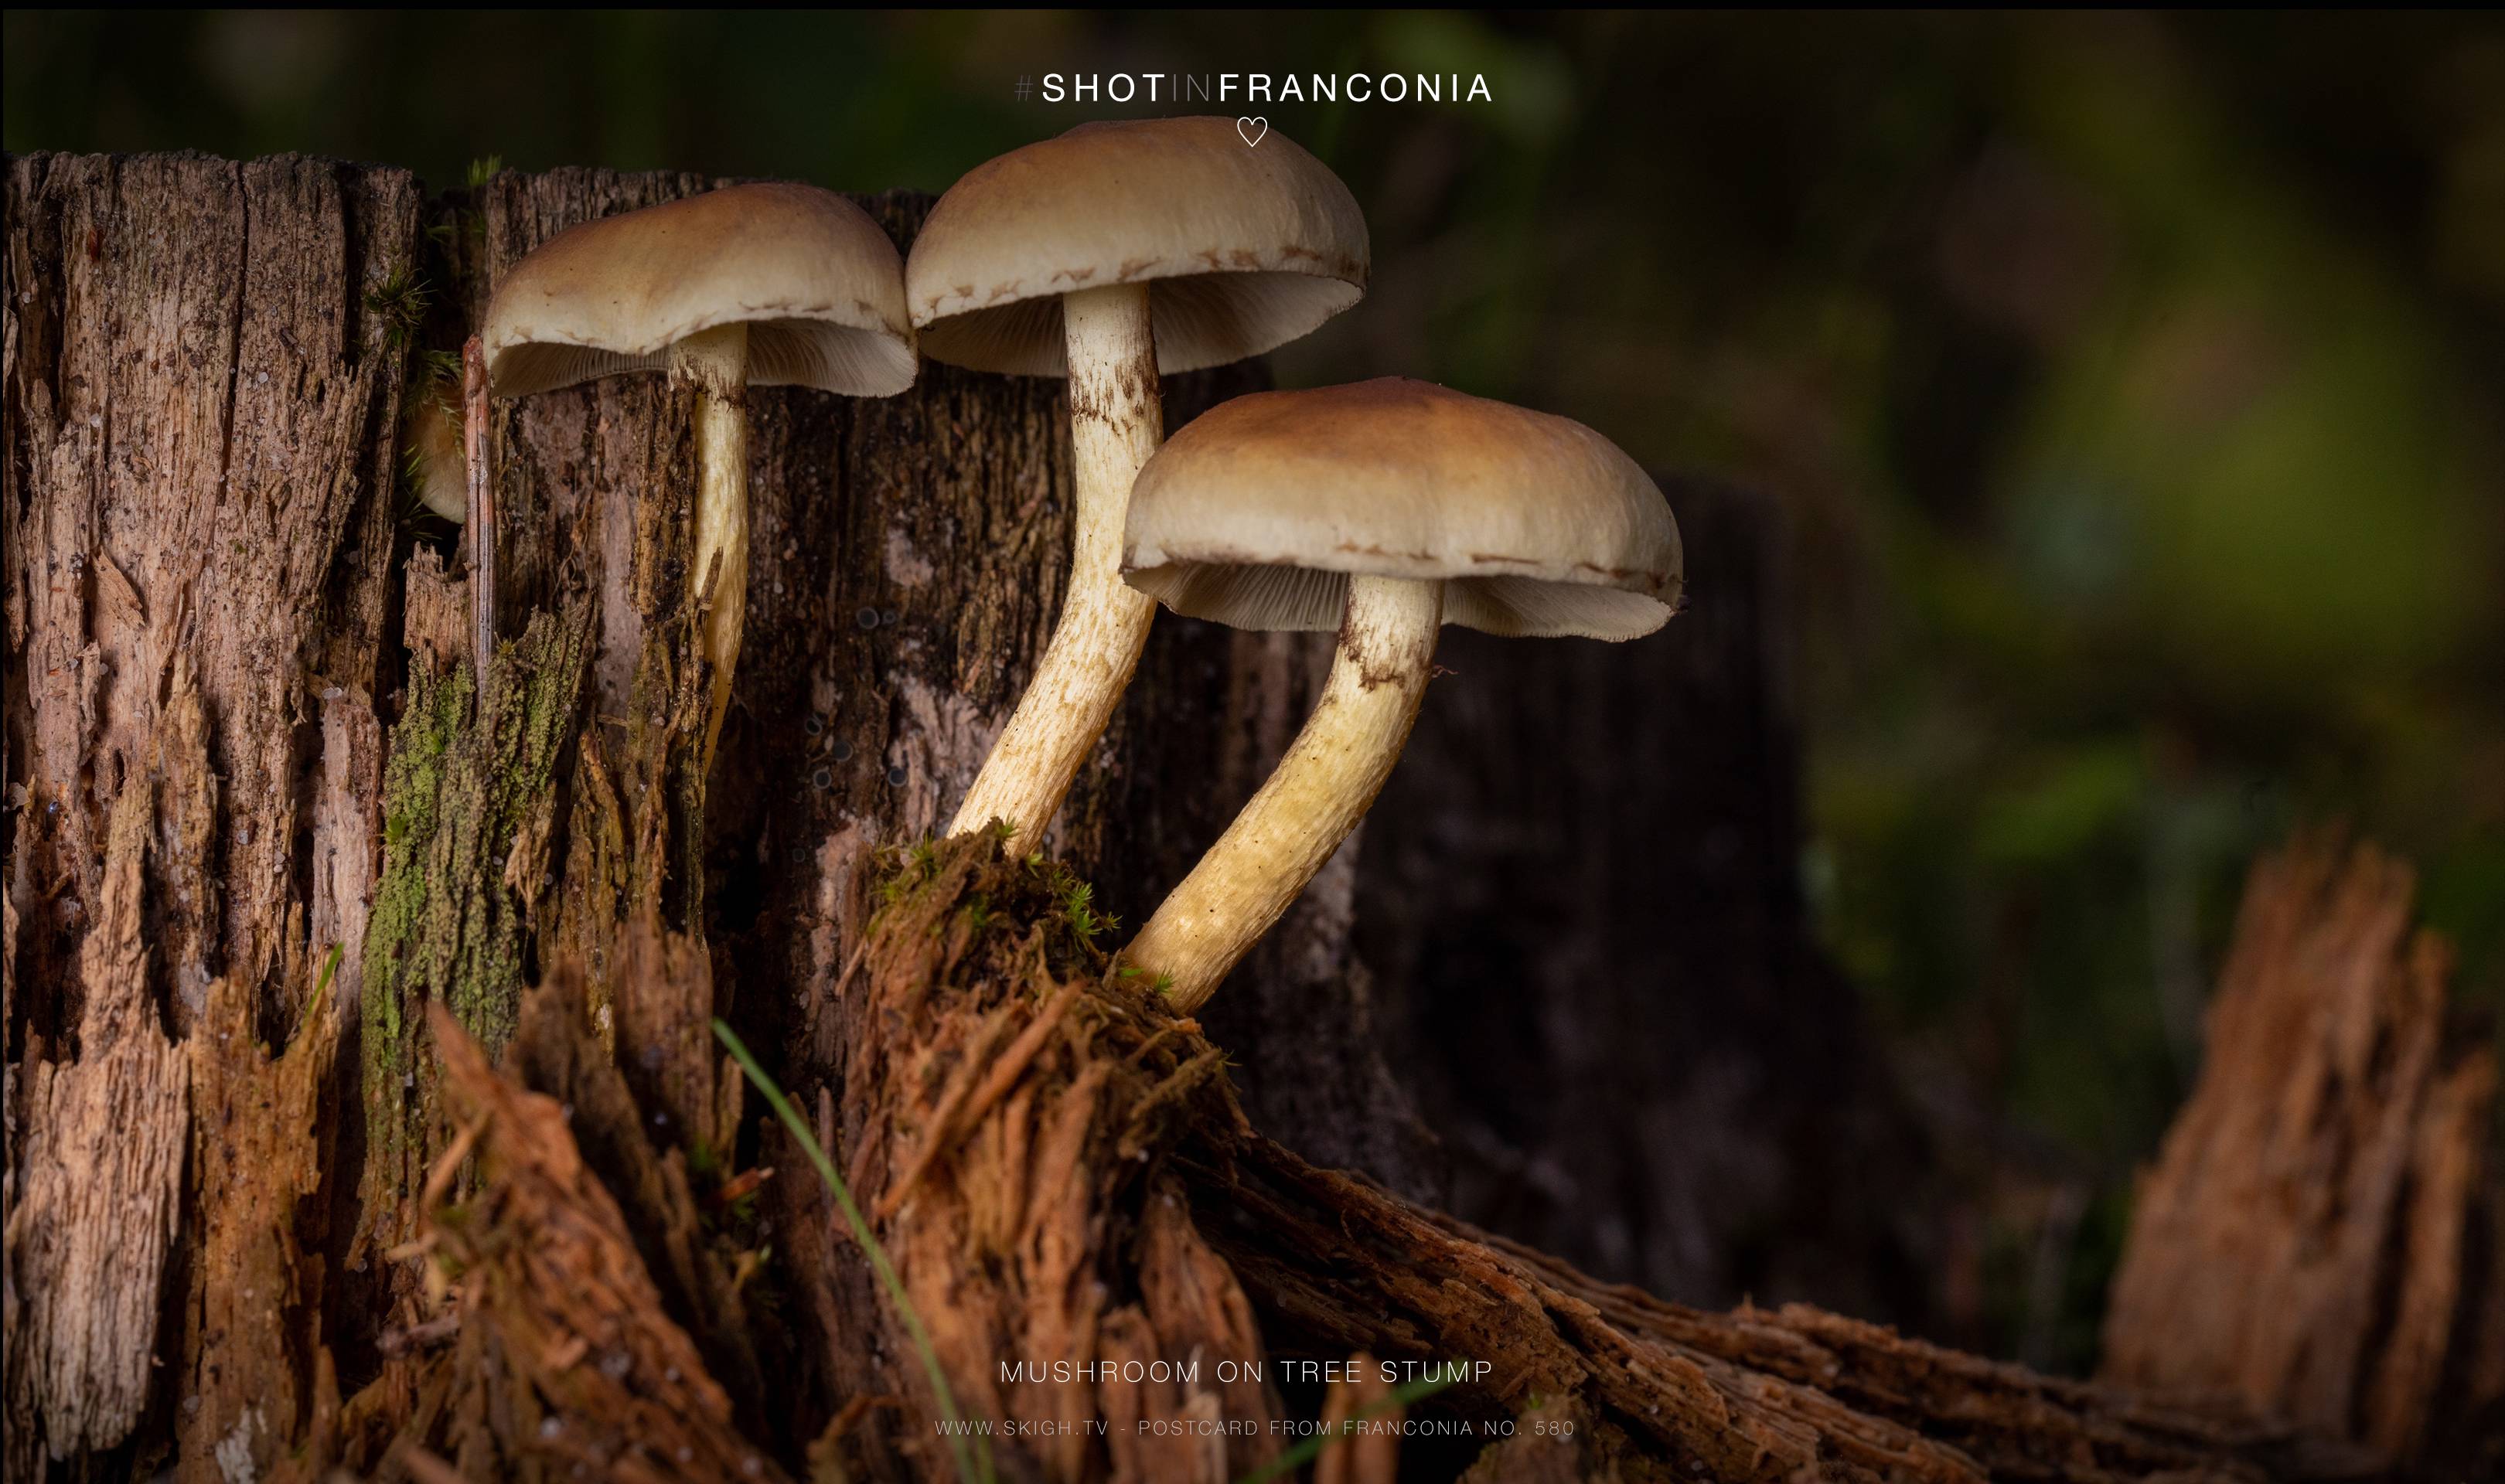 Mushroom on tree stump